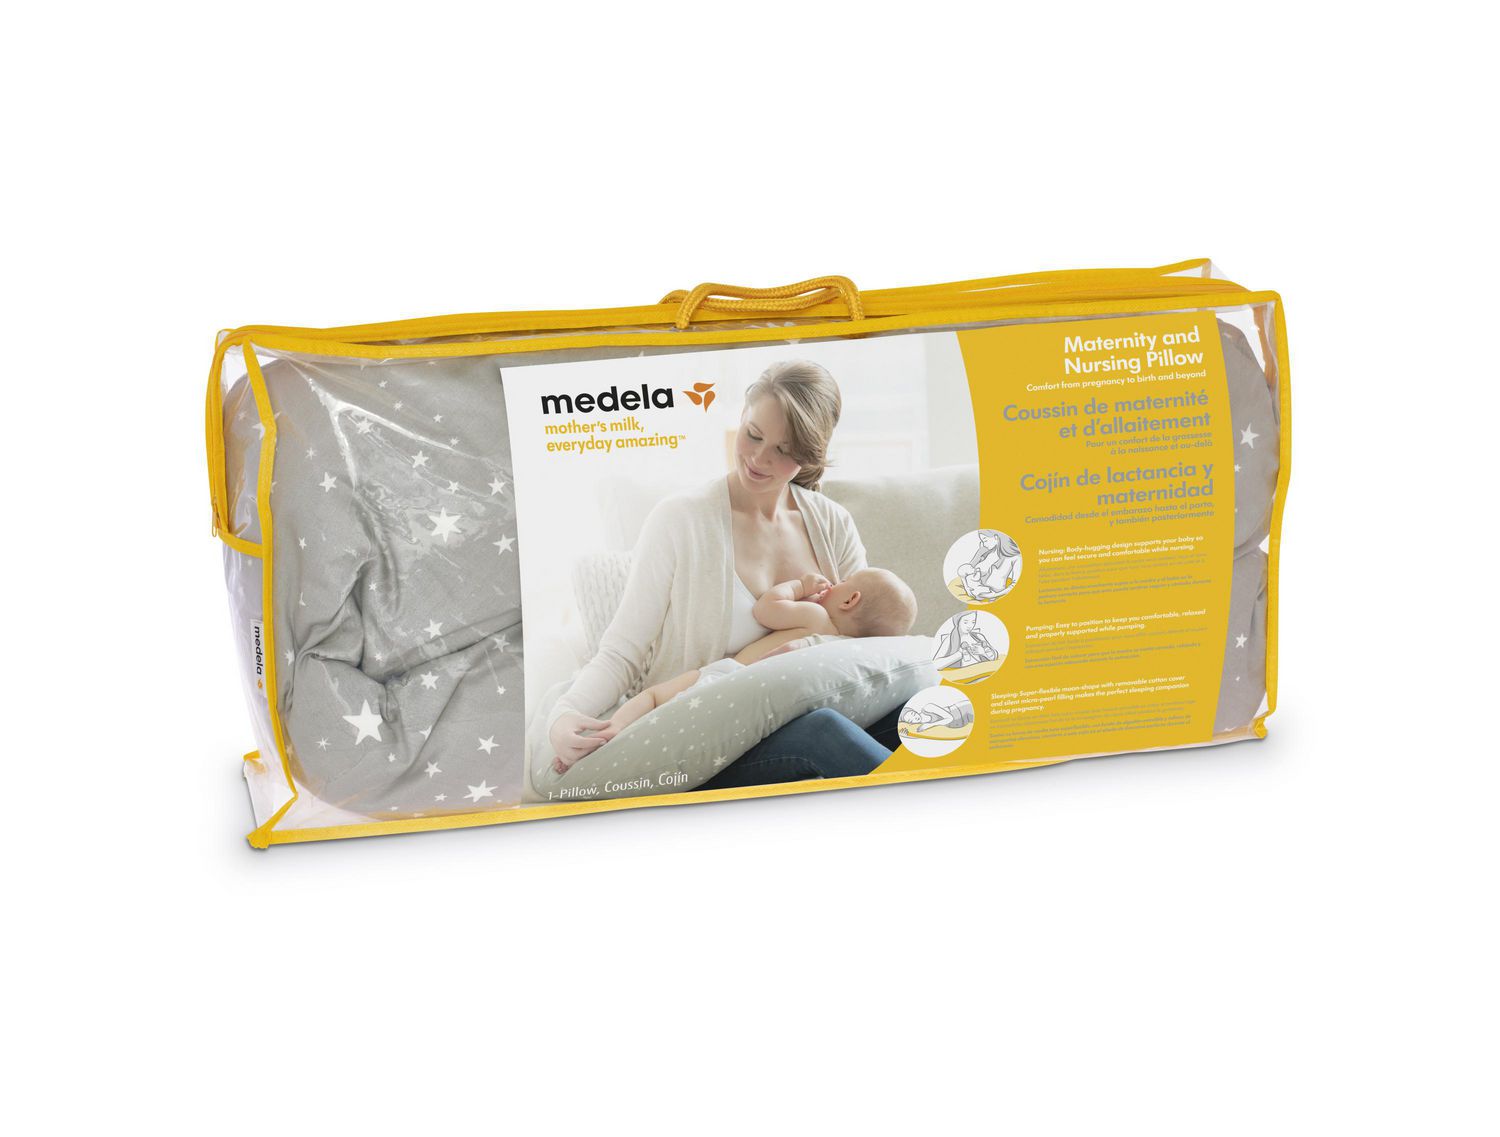 Medela Maternity and Nursing Pillow 